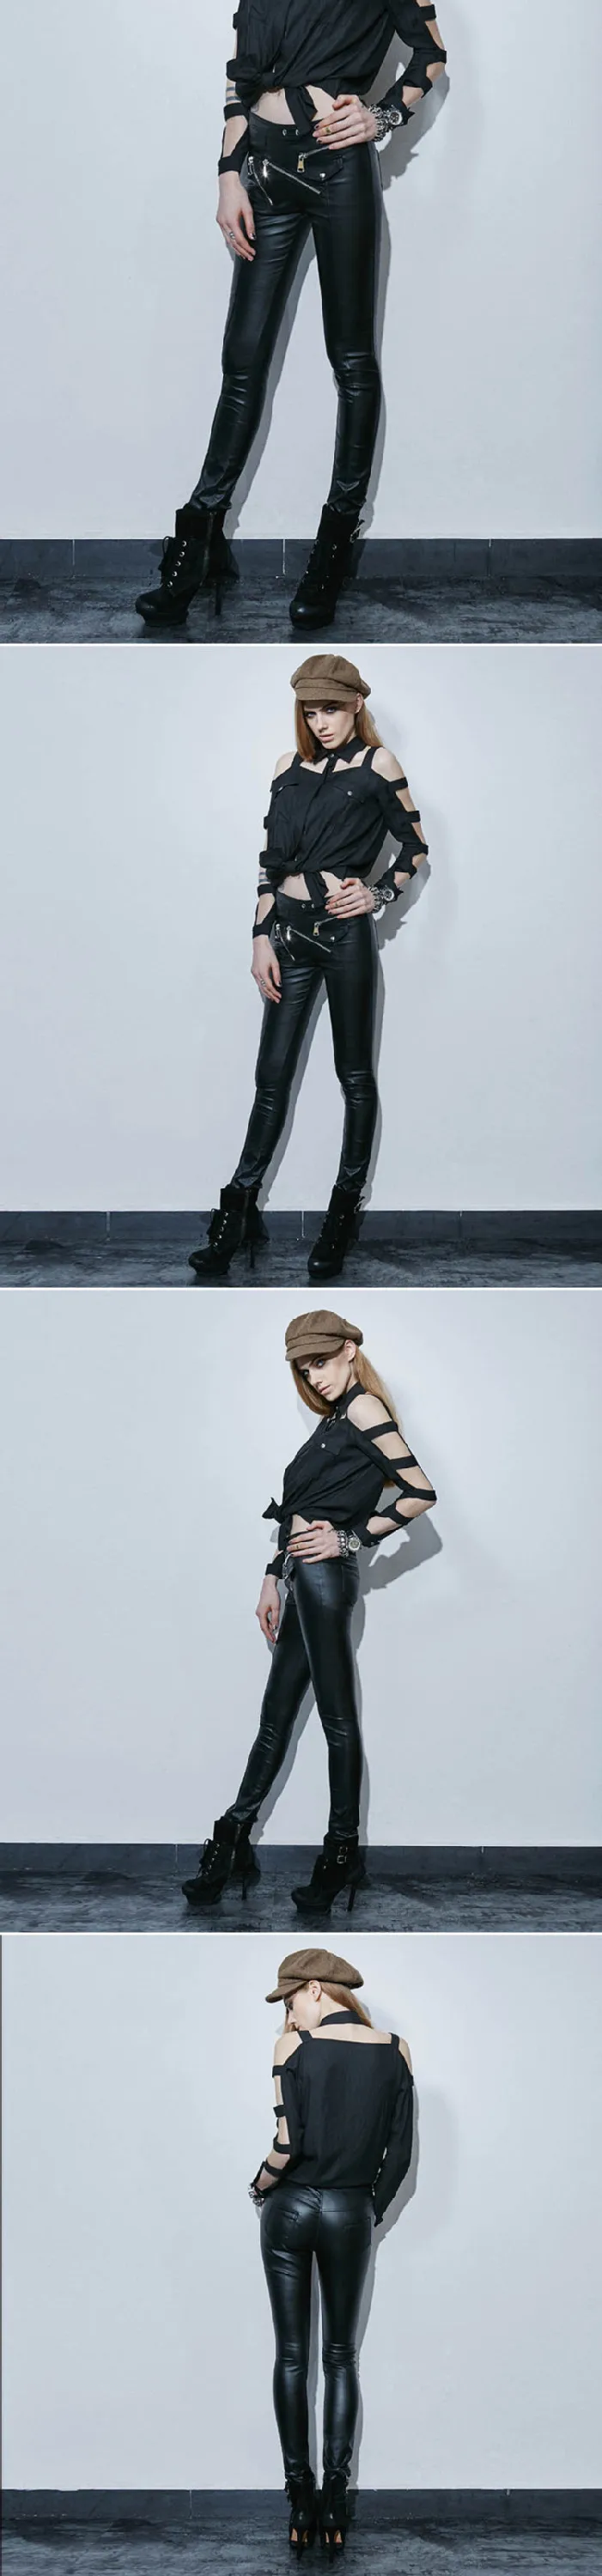 K 2ファッション女性ゴシックパンクストリートウェアレザーホットパンツ Buy レザーホットパンツ ゴシックパンクパンツ ストリートウェアパンツ Product On Alibaba Com